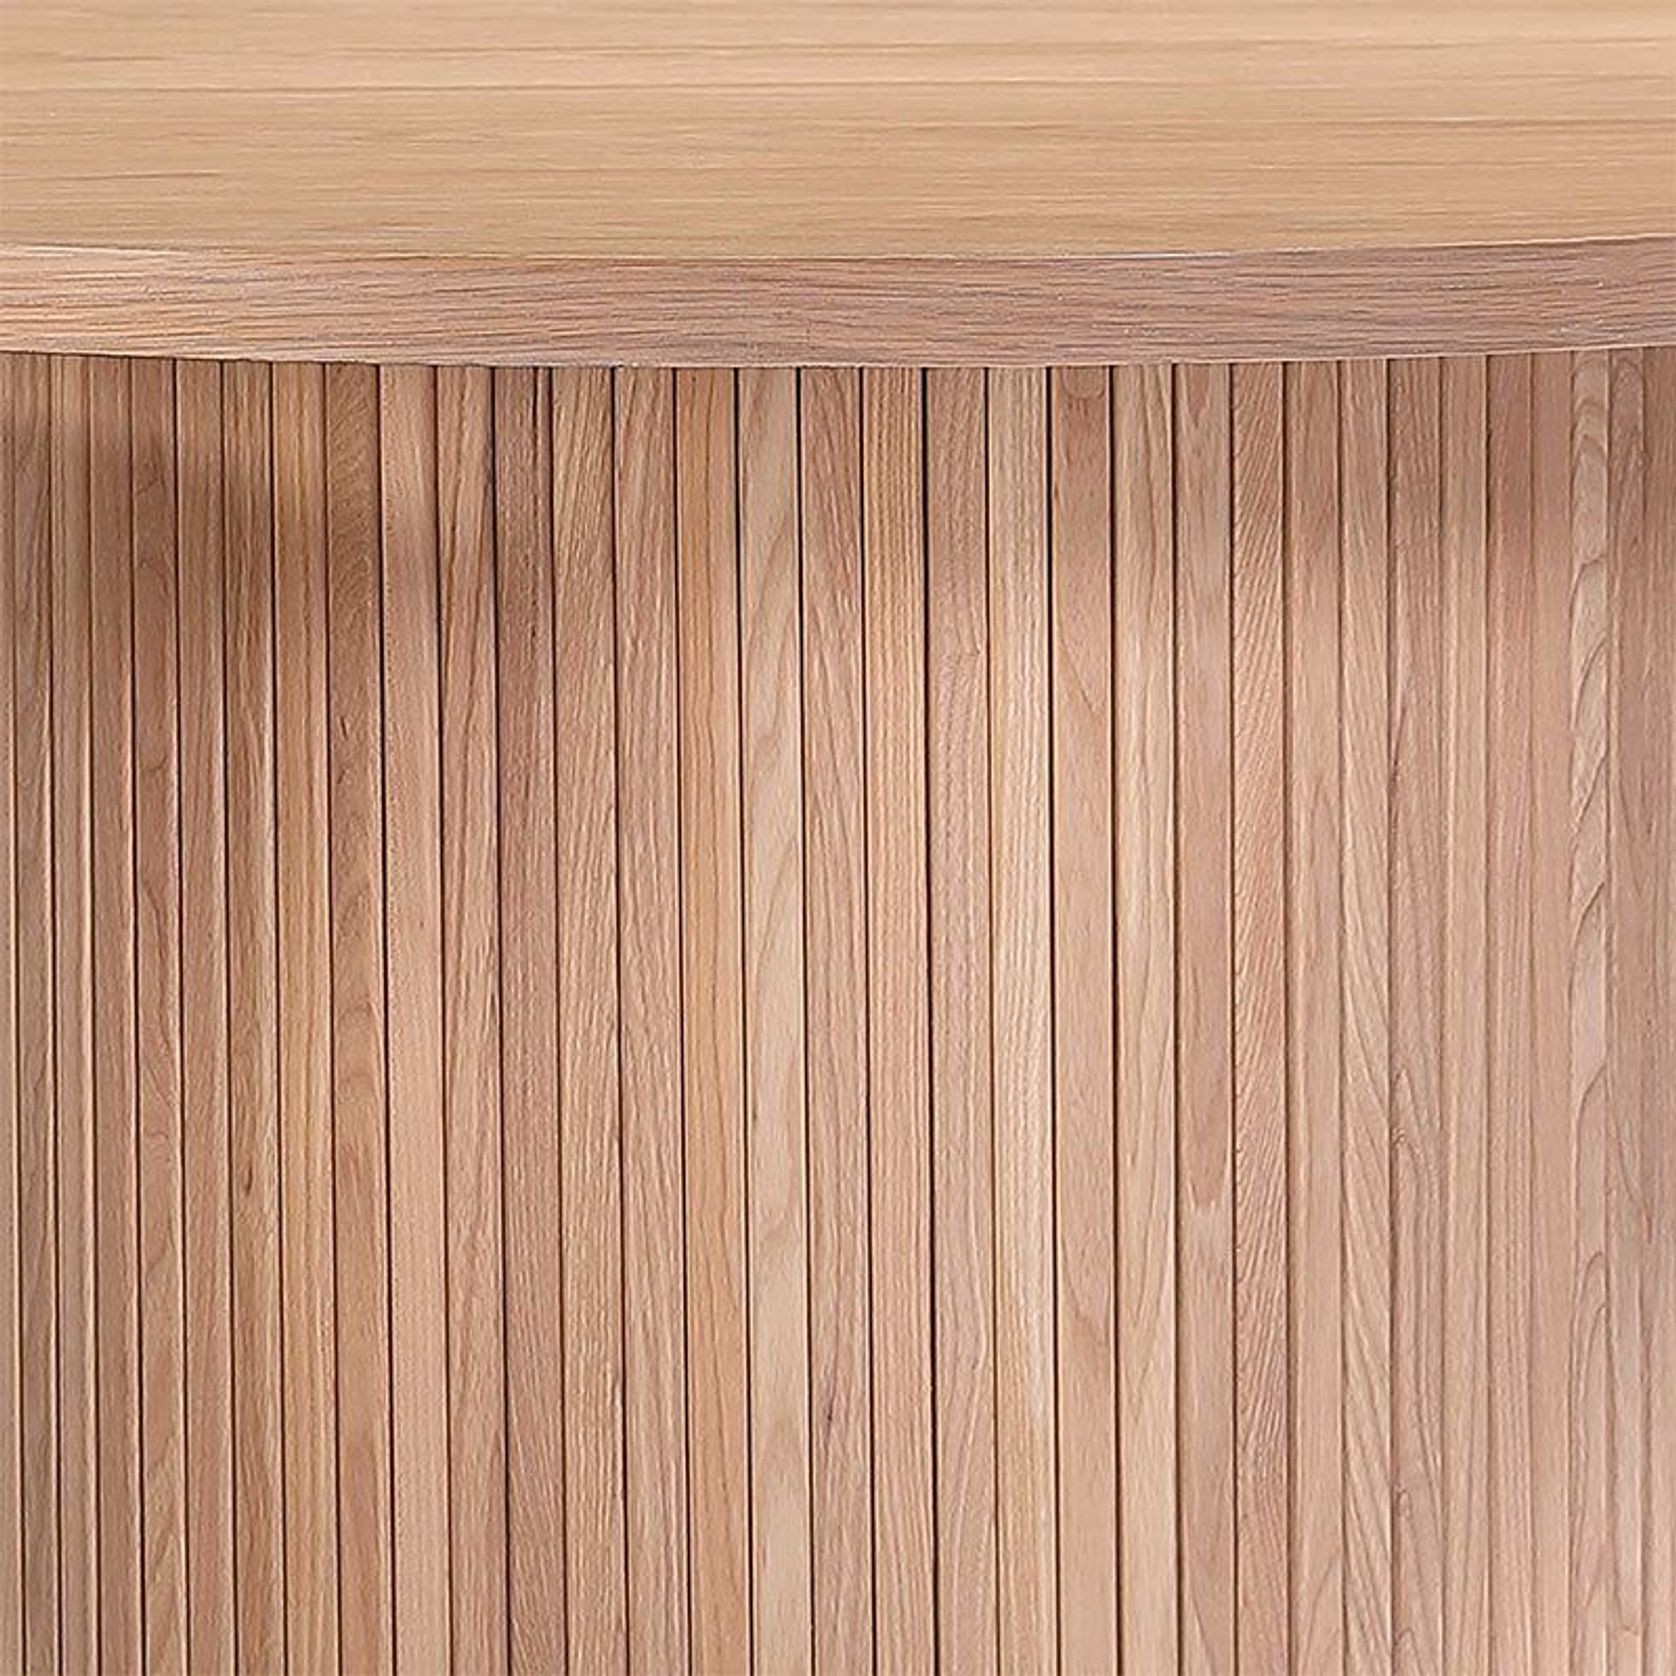 KENZI Coffee Table 80cm - Oak gallery detail image